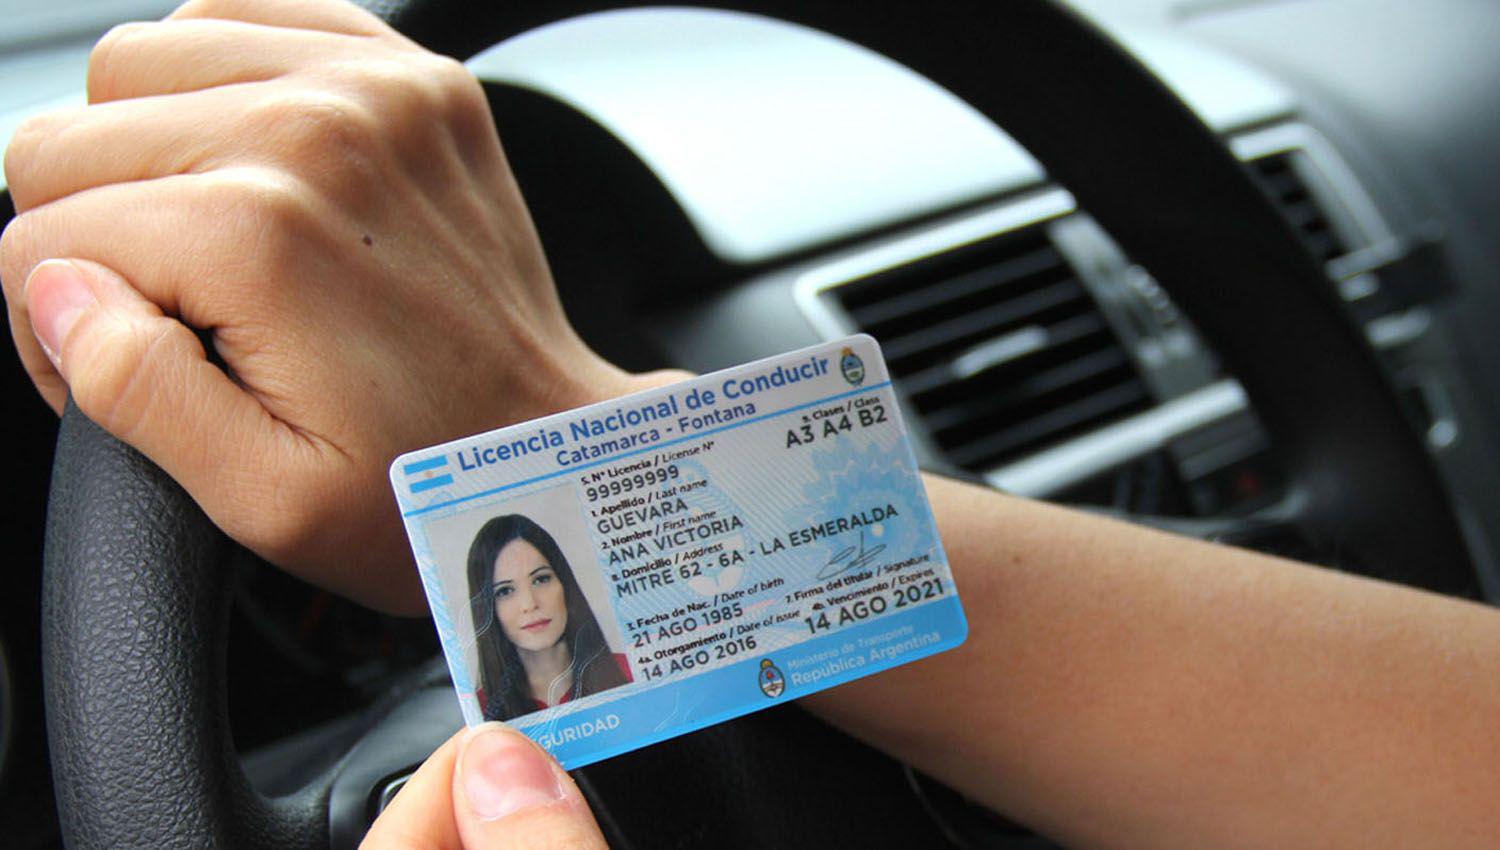 Proacuterroga para la renovacioacuten de las licencias de conducir